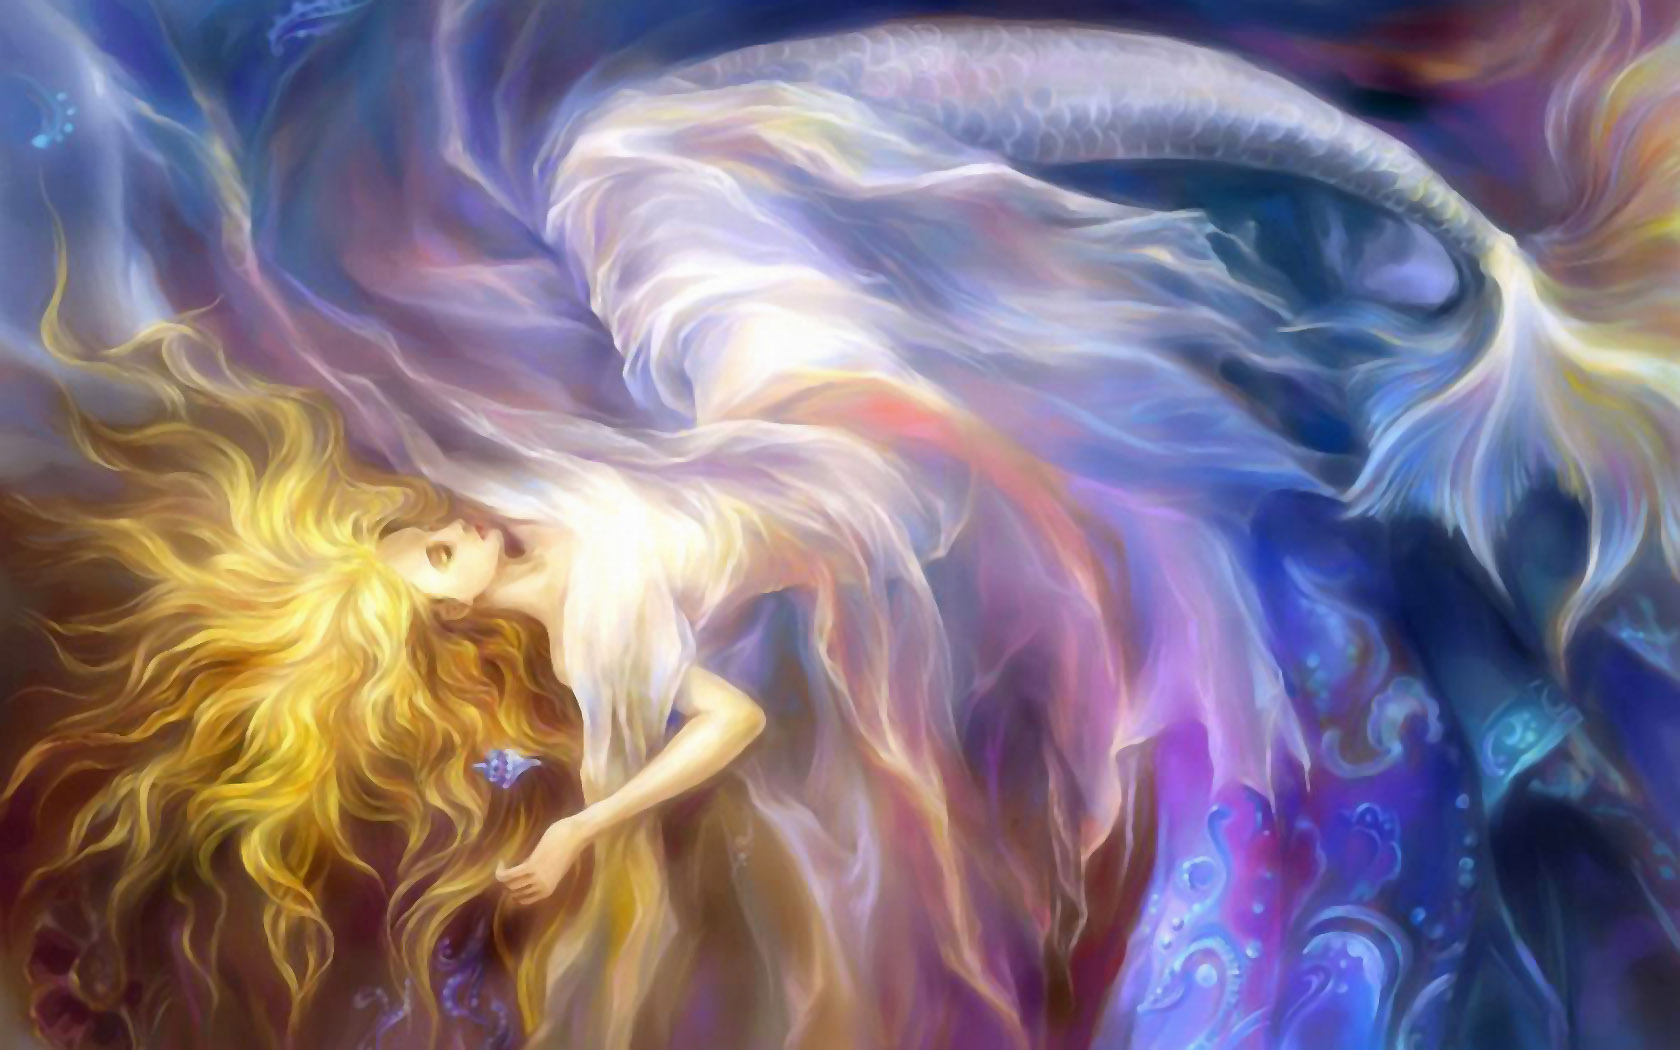 Fantasy mermaid desktop wallpaper by Rongrong Wang.